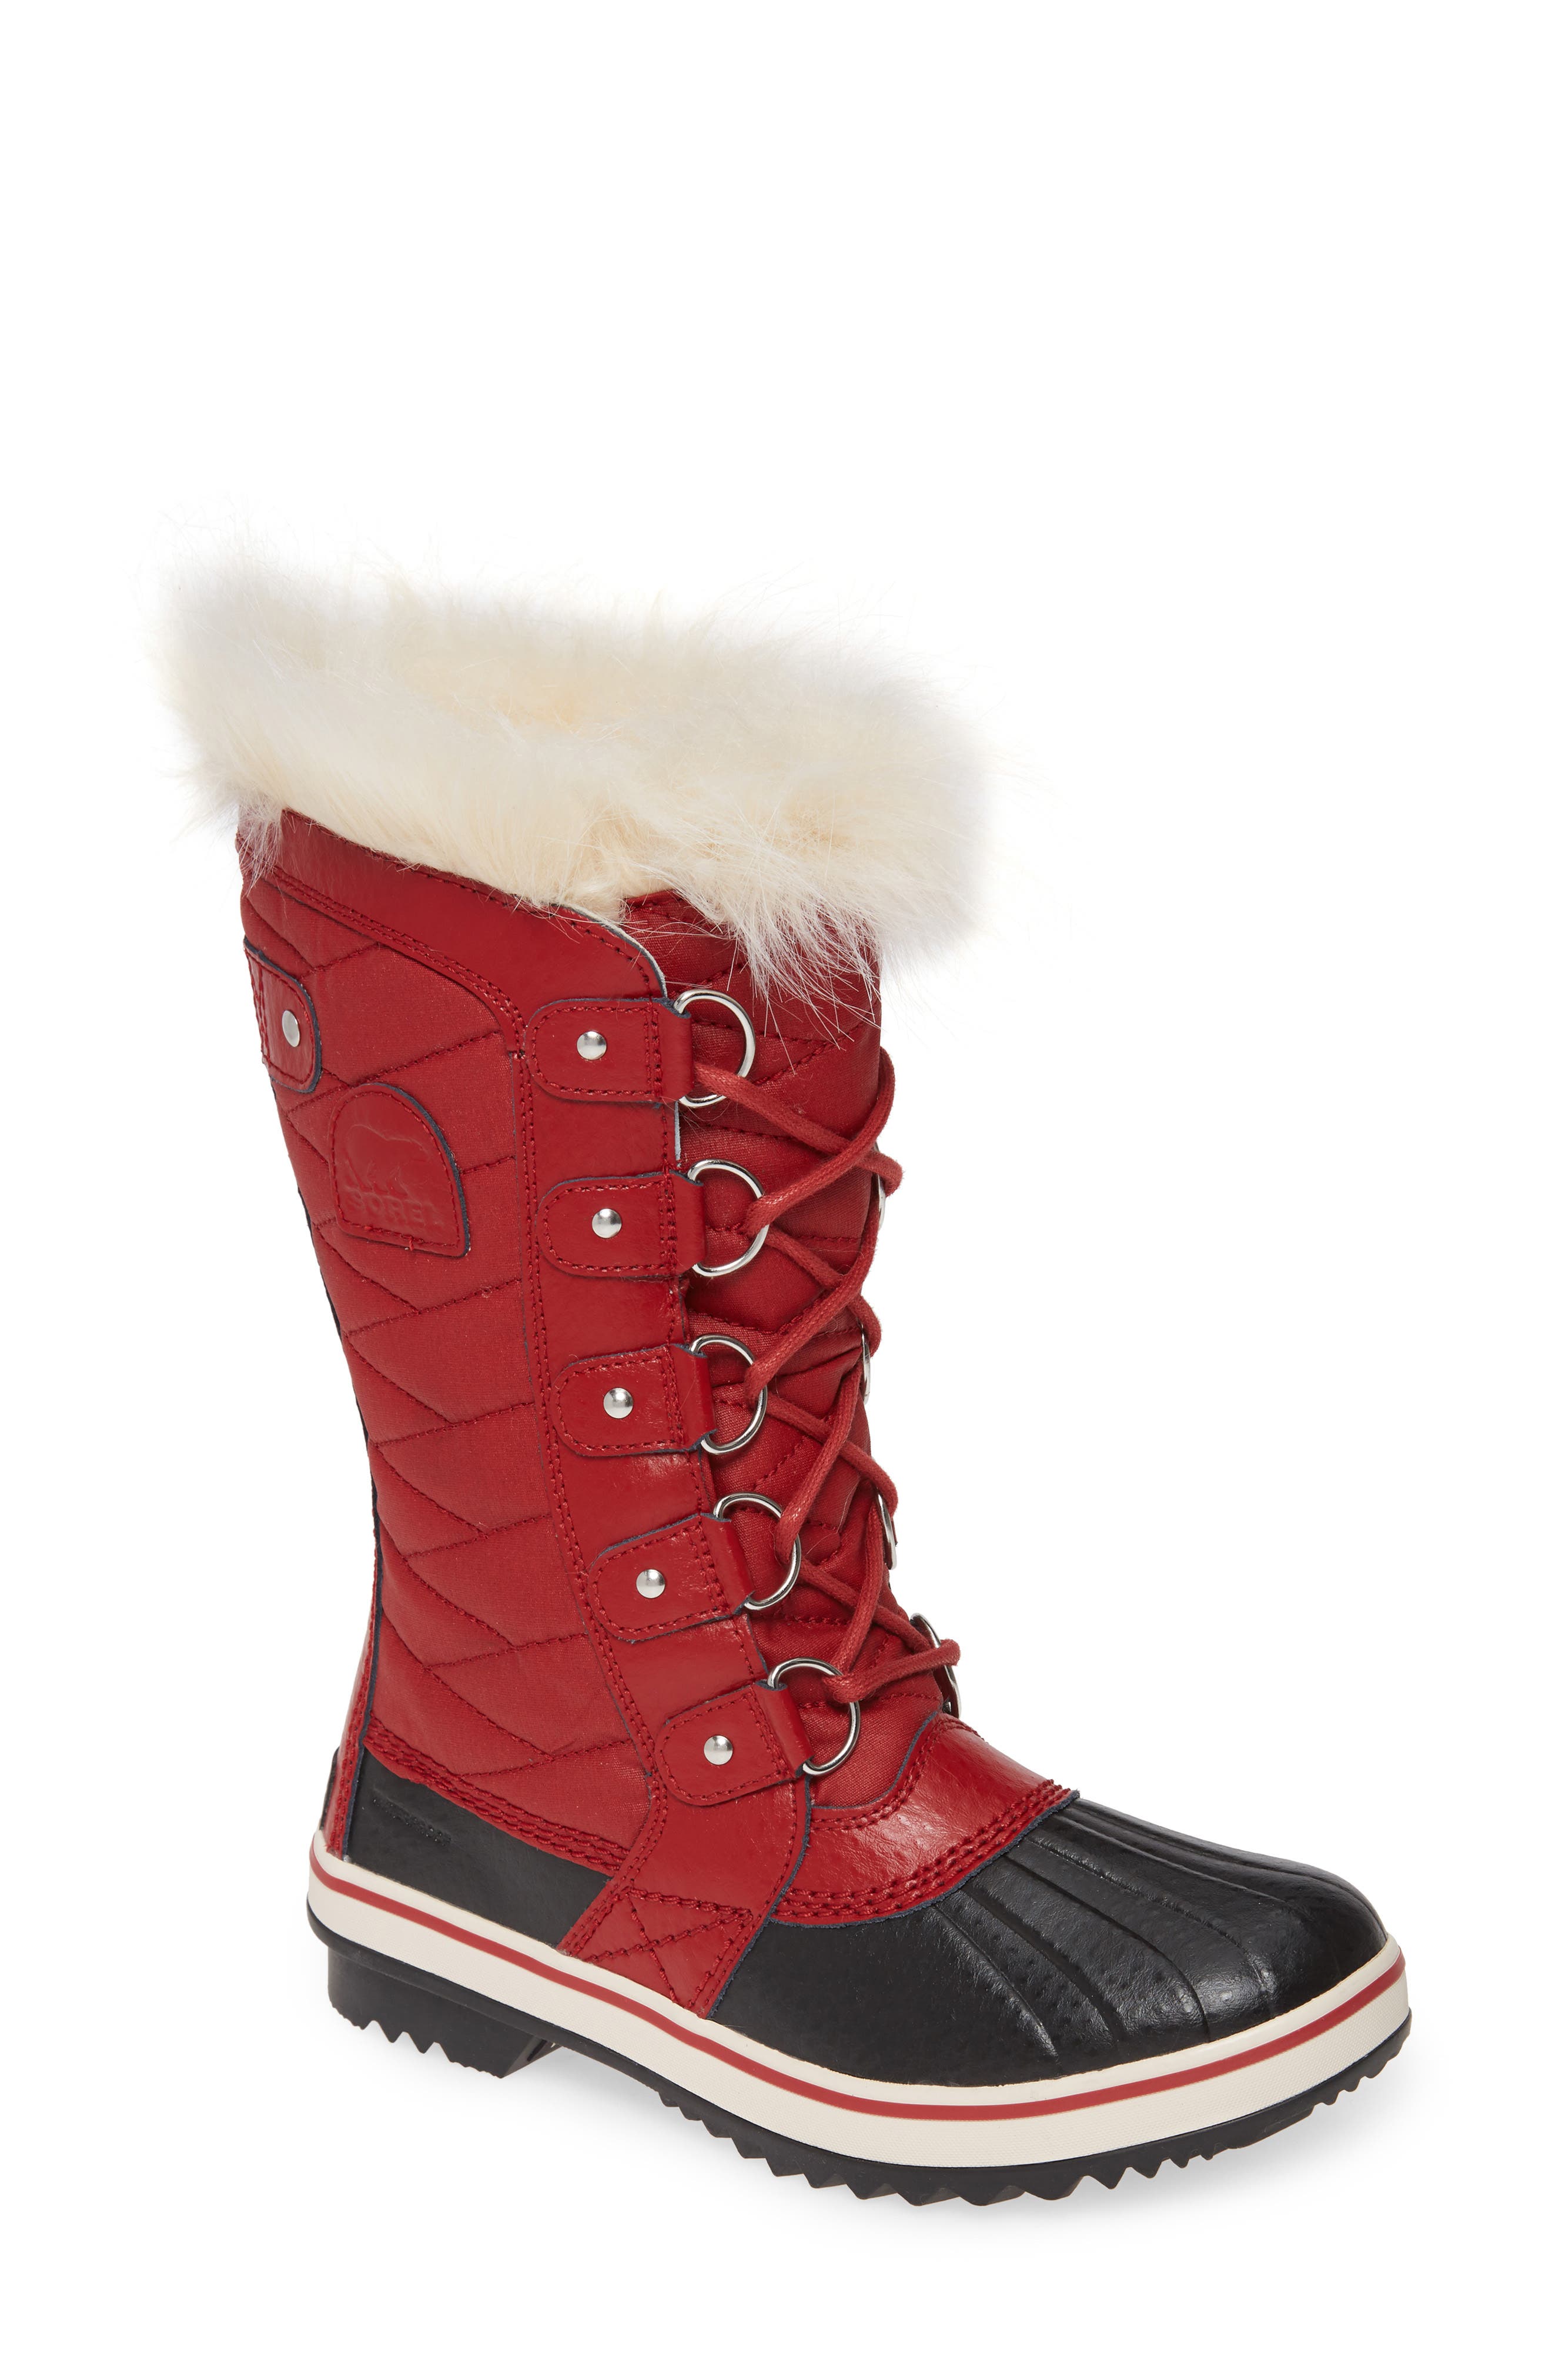 waterproof faux fur lined boots